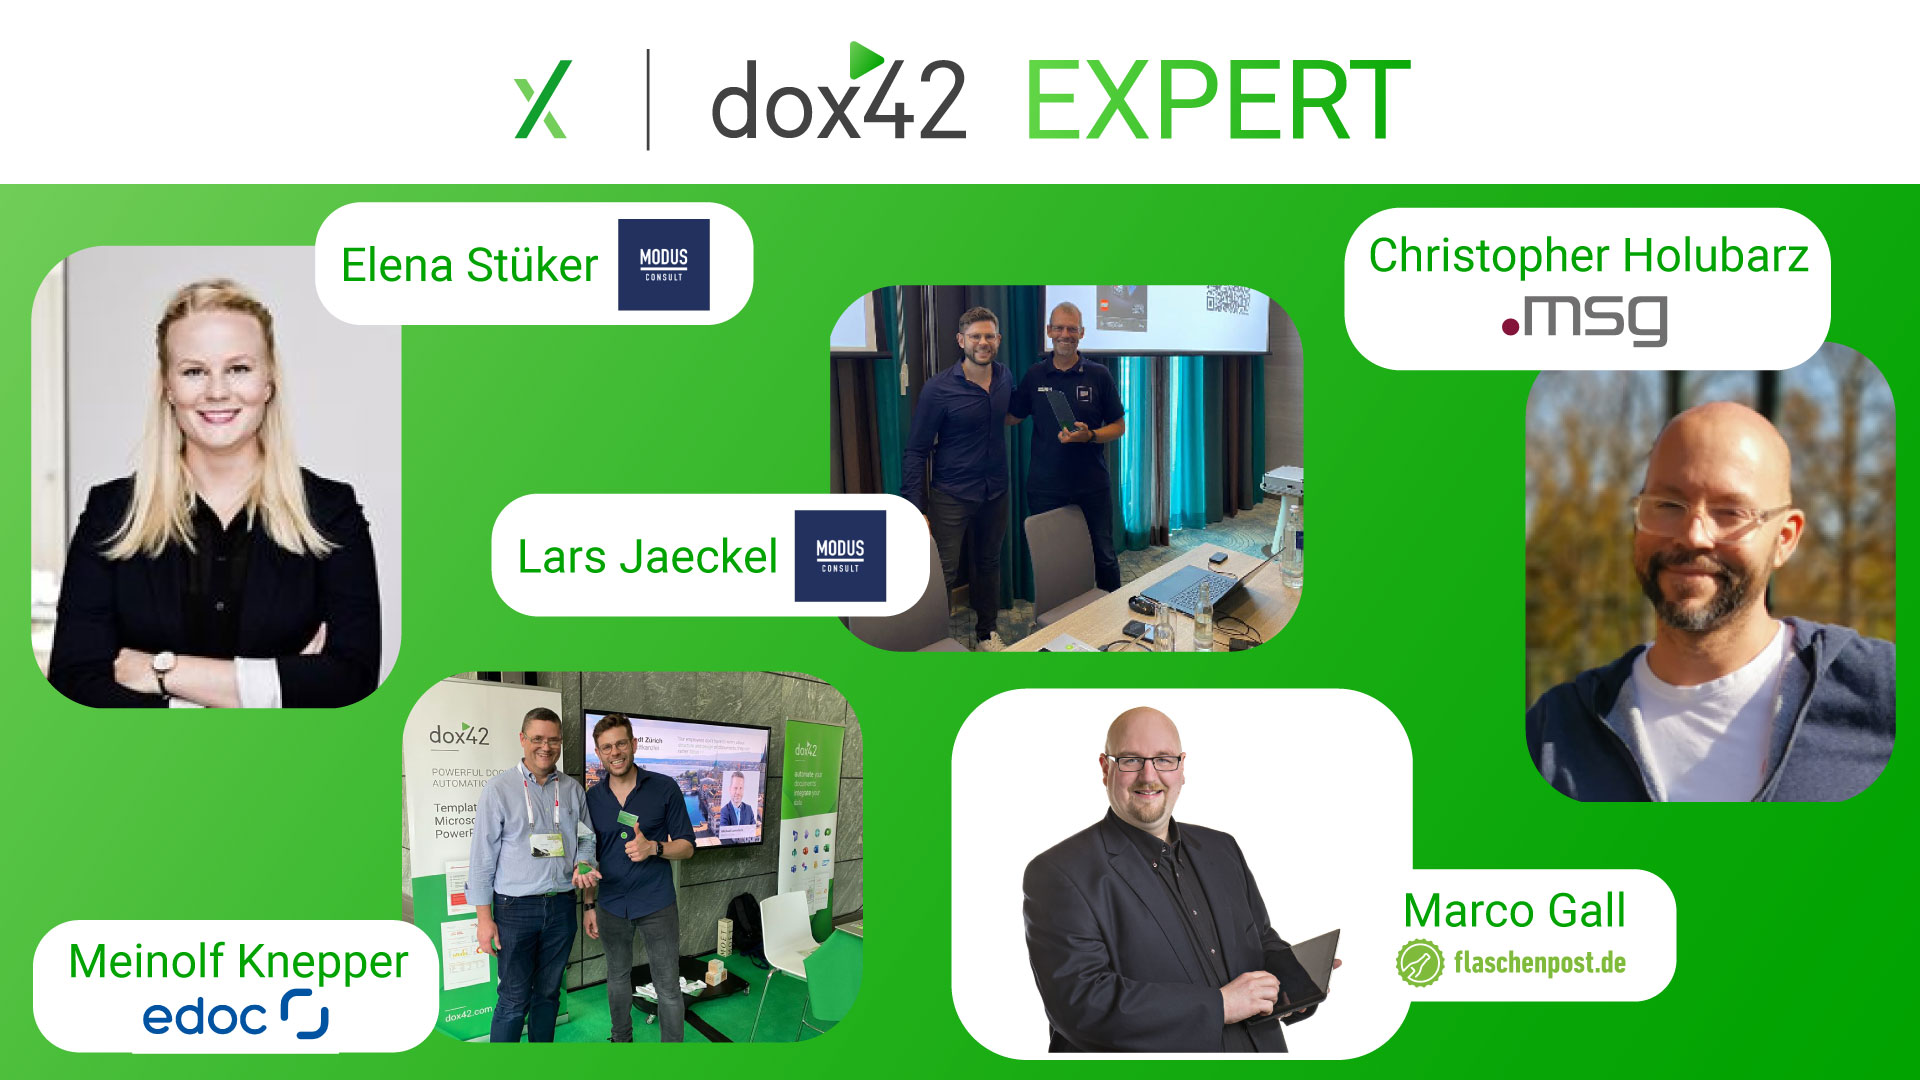 Lernen Sie unsere neuen dox42 Experts kennen